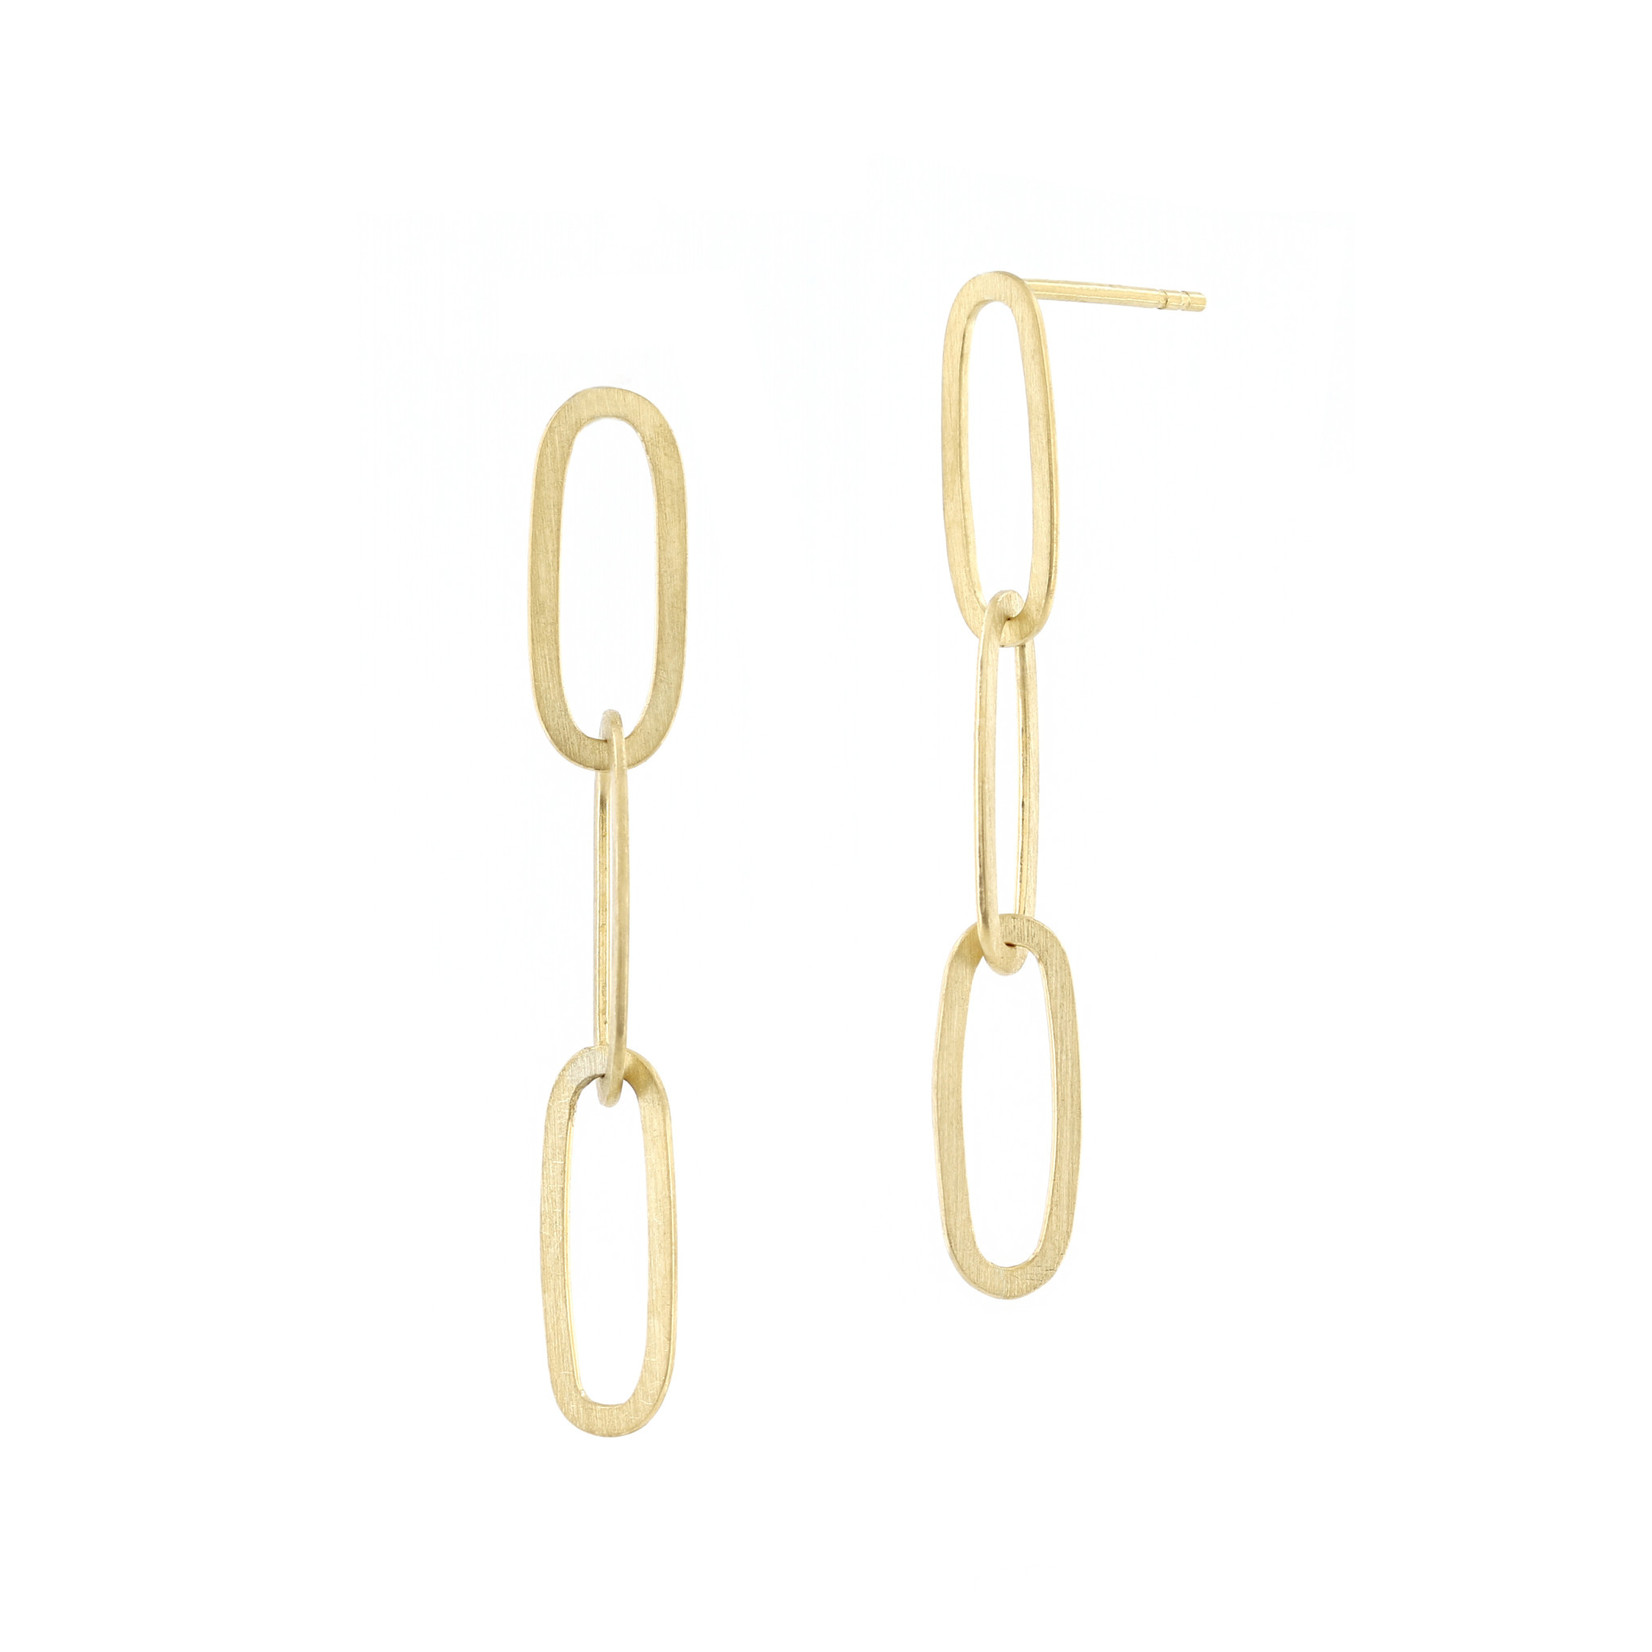 Baxter Moerman Niki Flat Link Chain Earrings